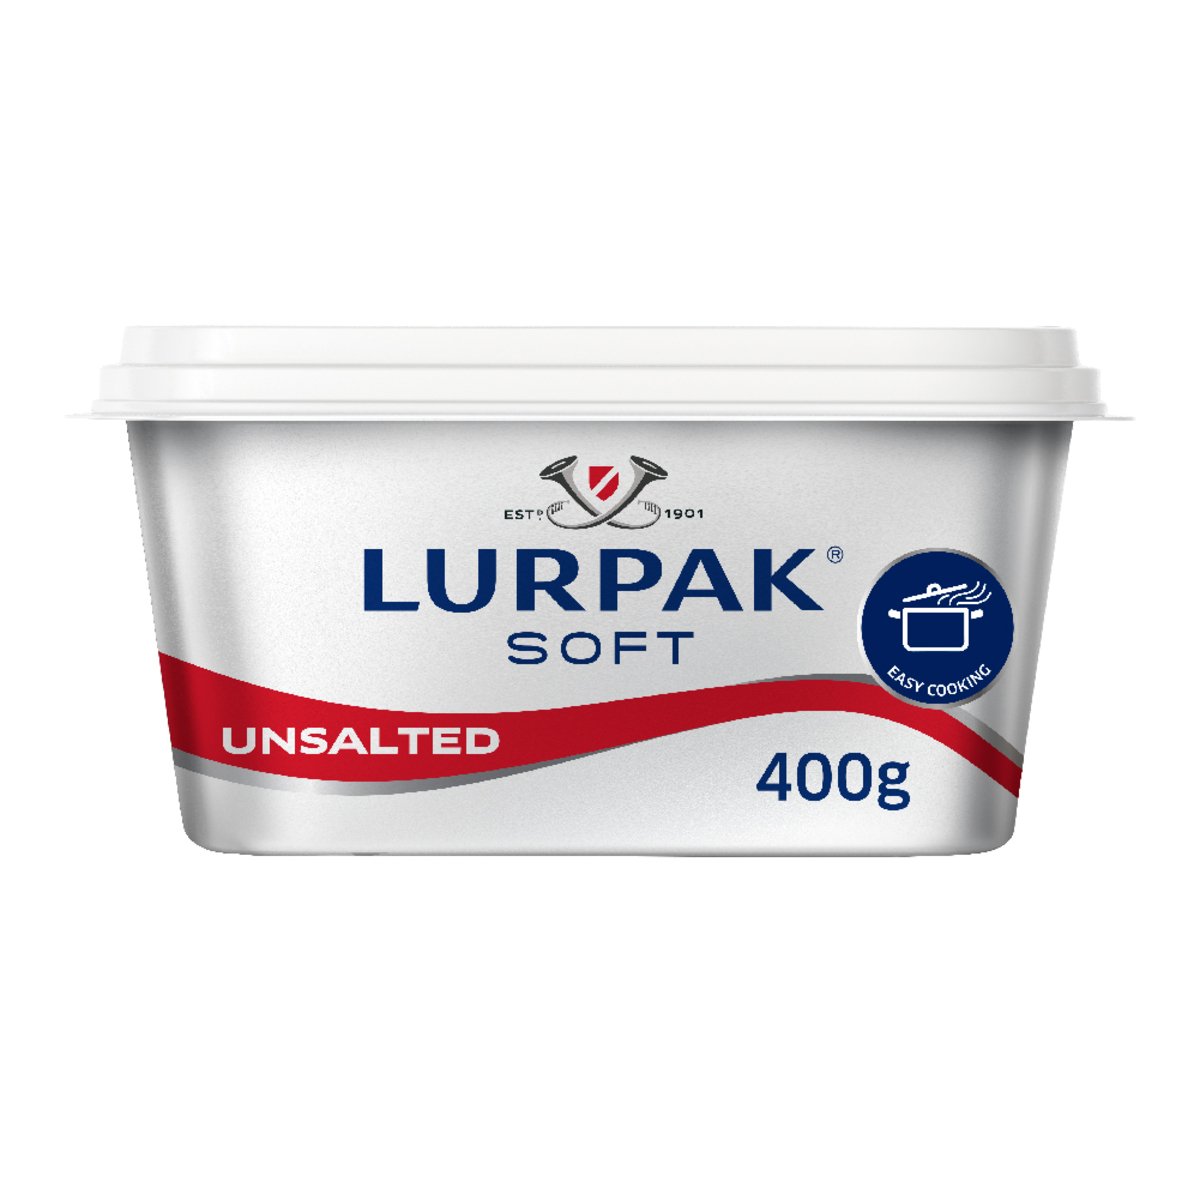 Lurpak Soft Butter Unsalted 400g